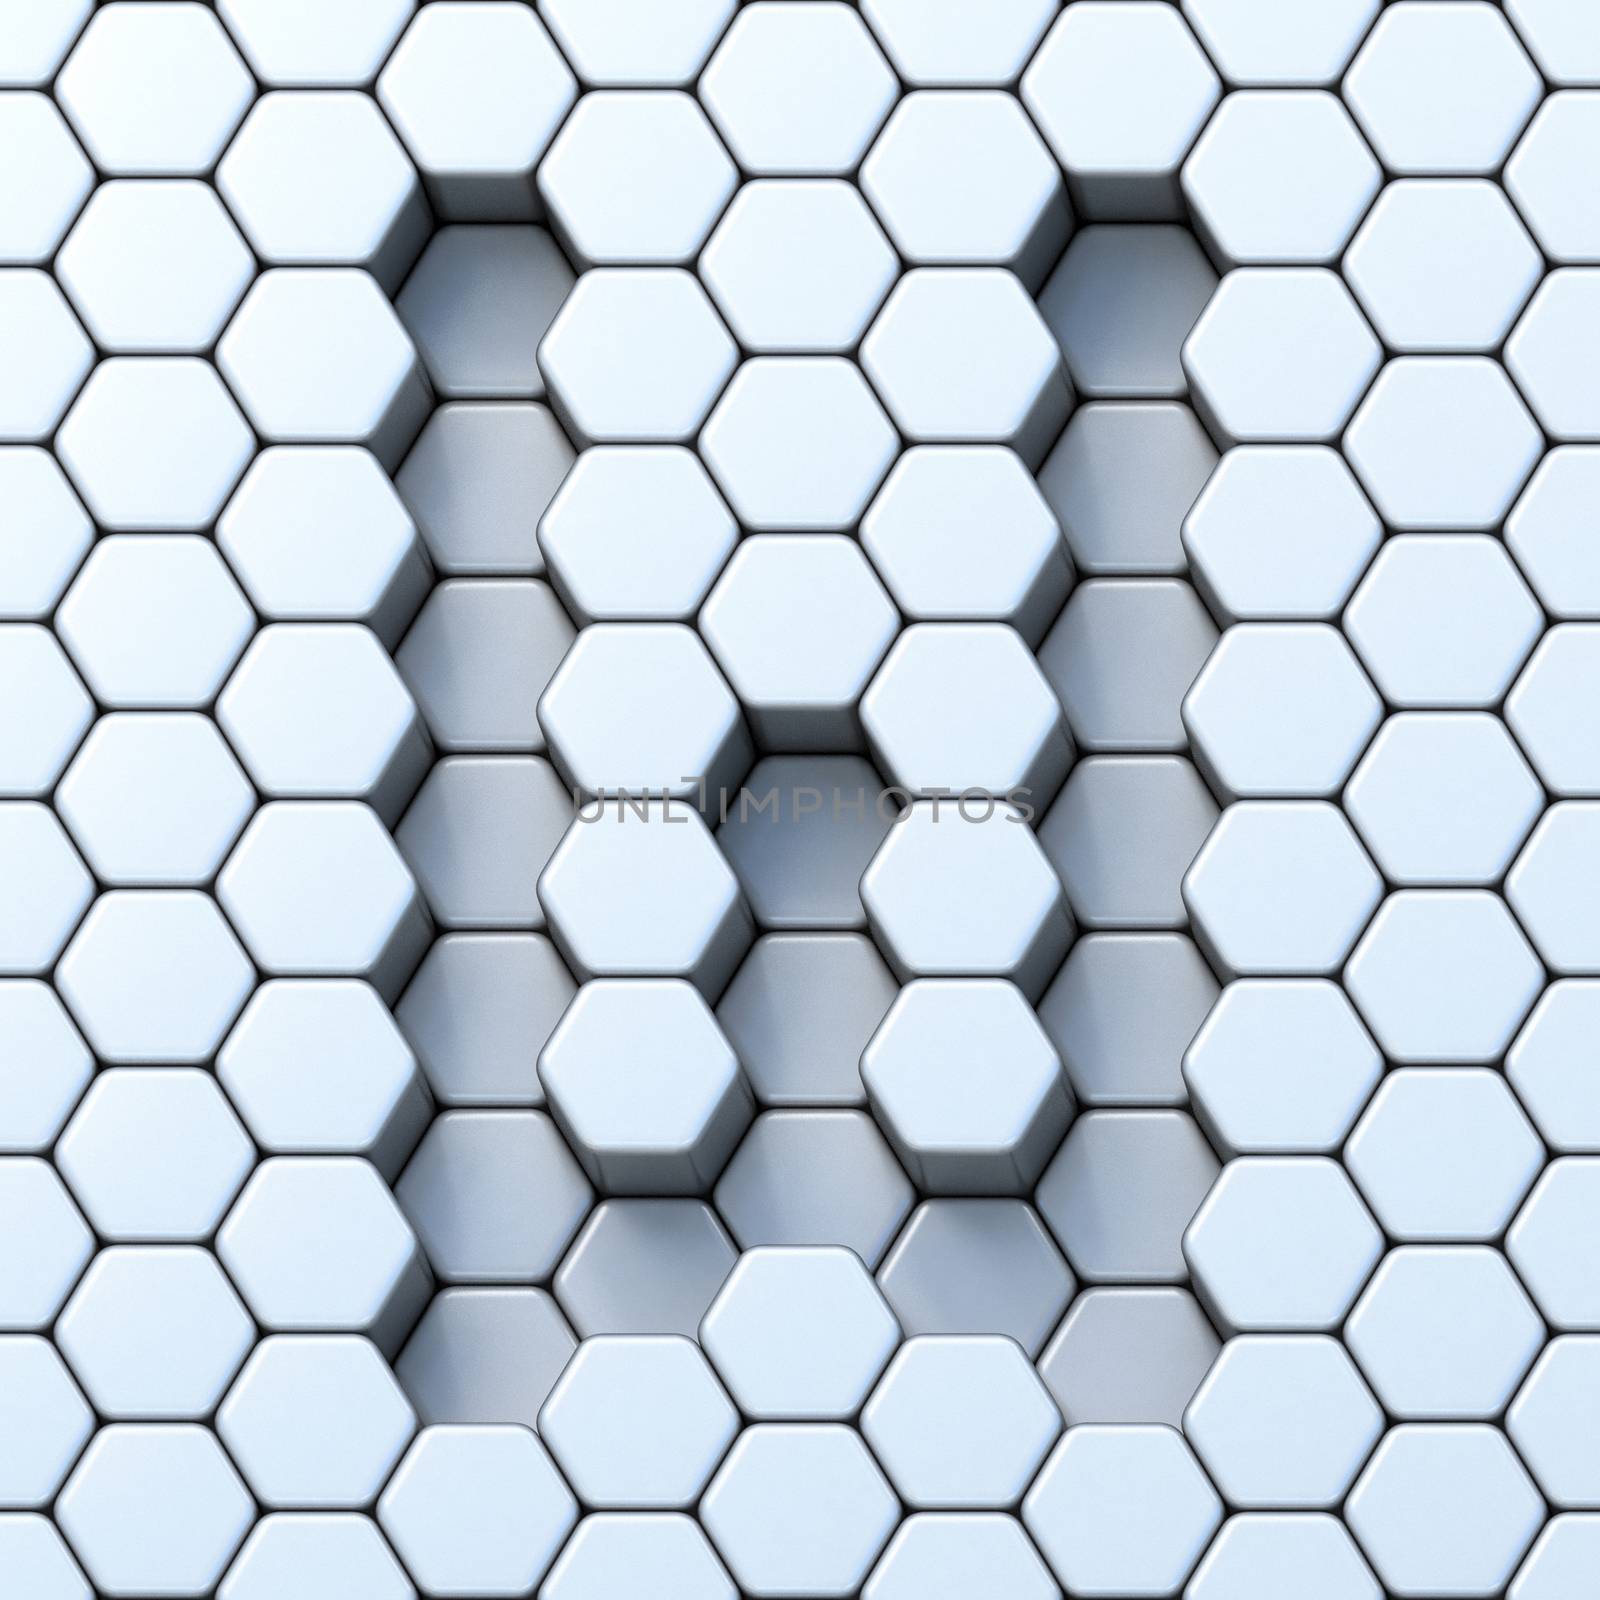 Hexagonal grid letter W 3D by djmilic